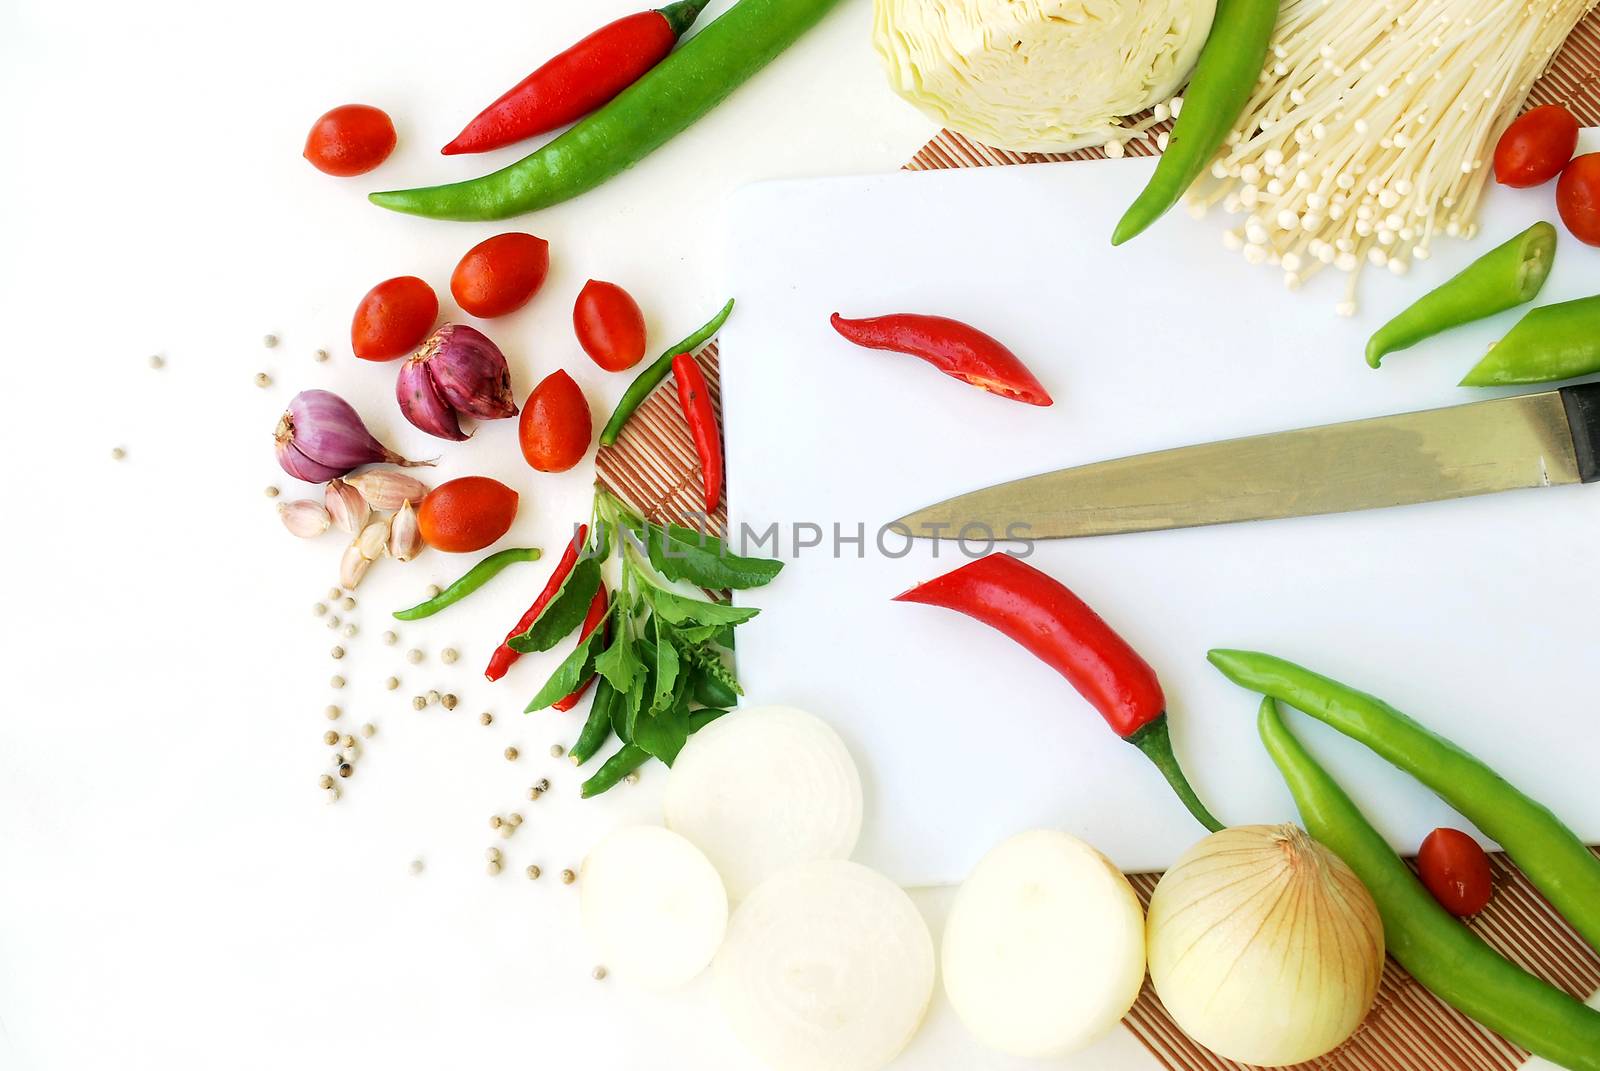 Background is vegetable.Thai food ingredients